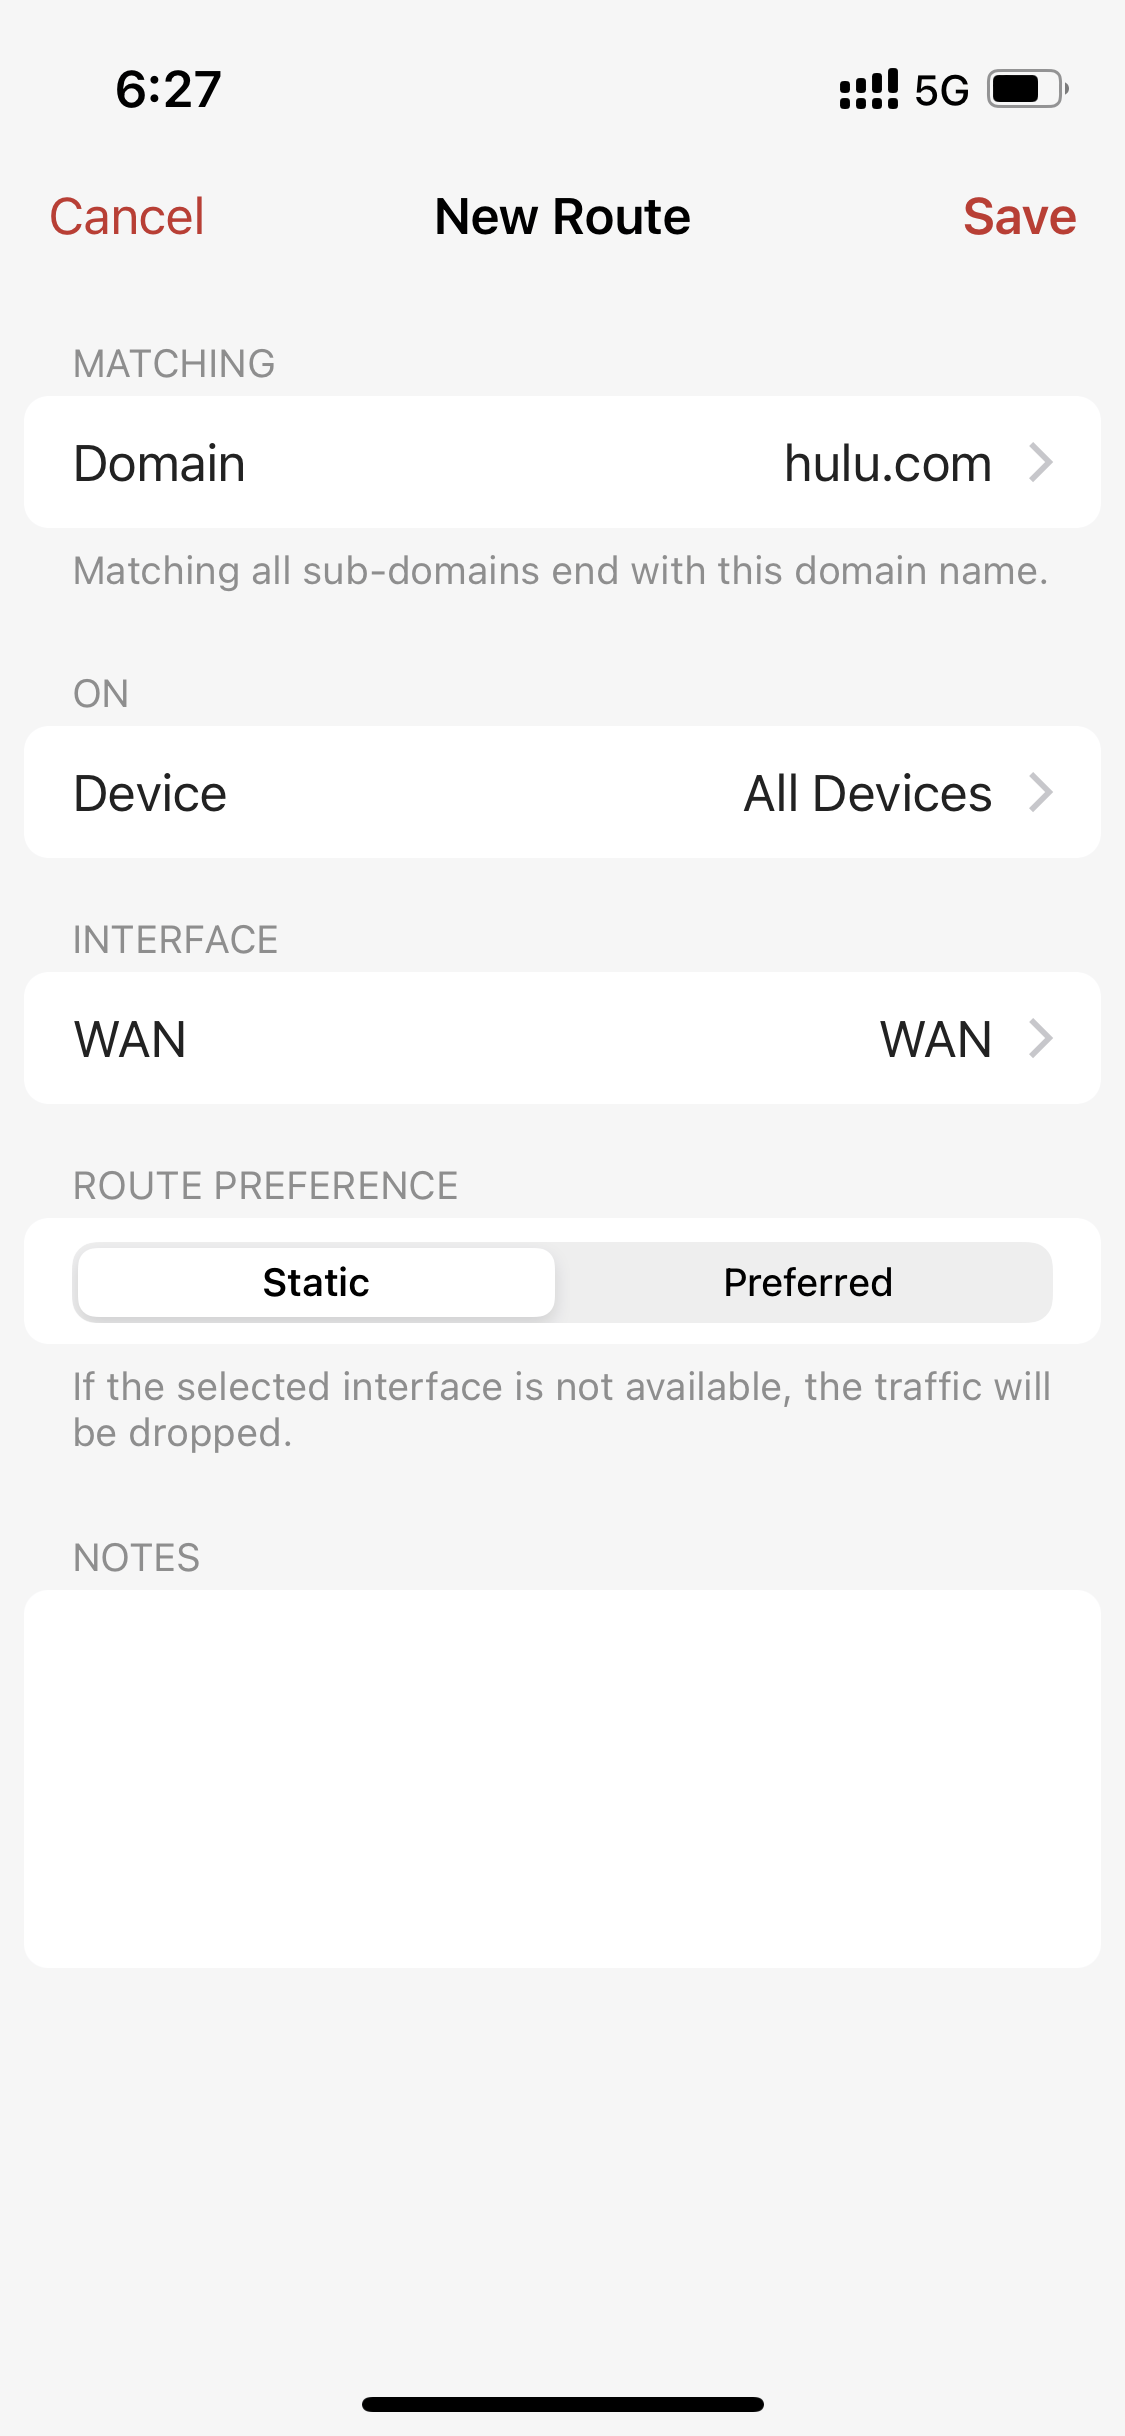 Firewalla route matching Hulu domain on Apple TV device